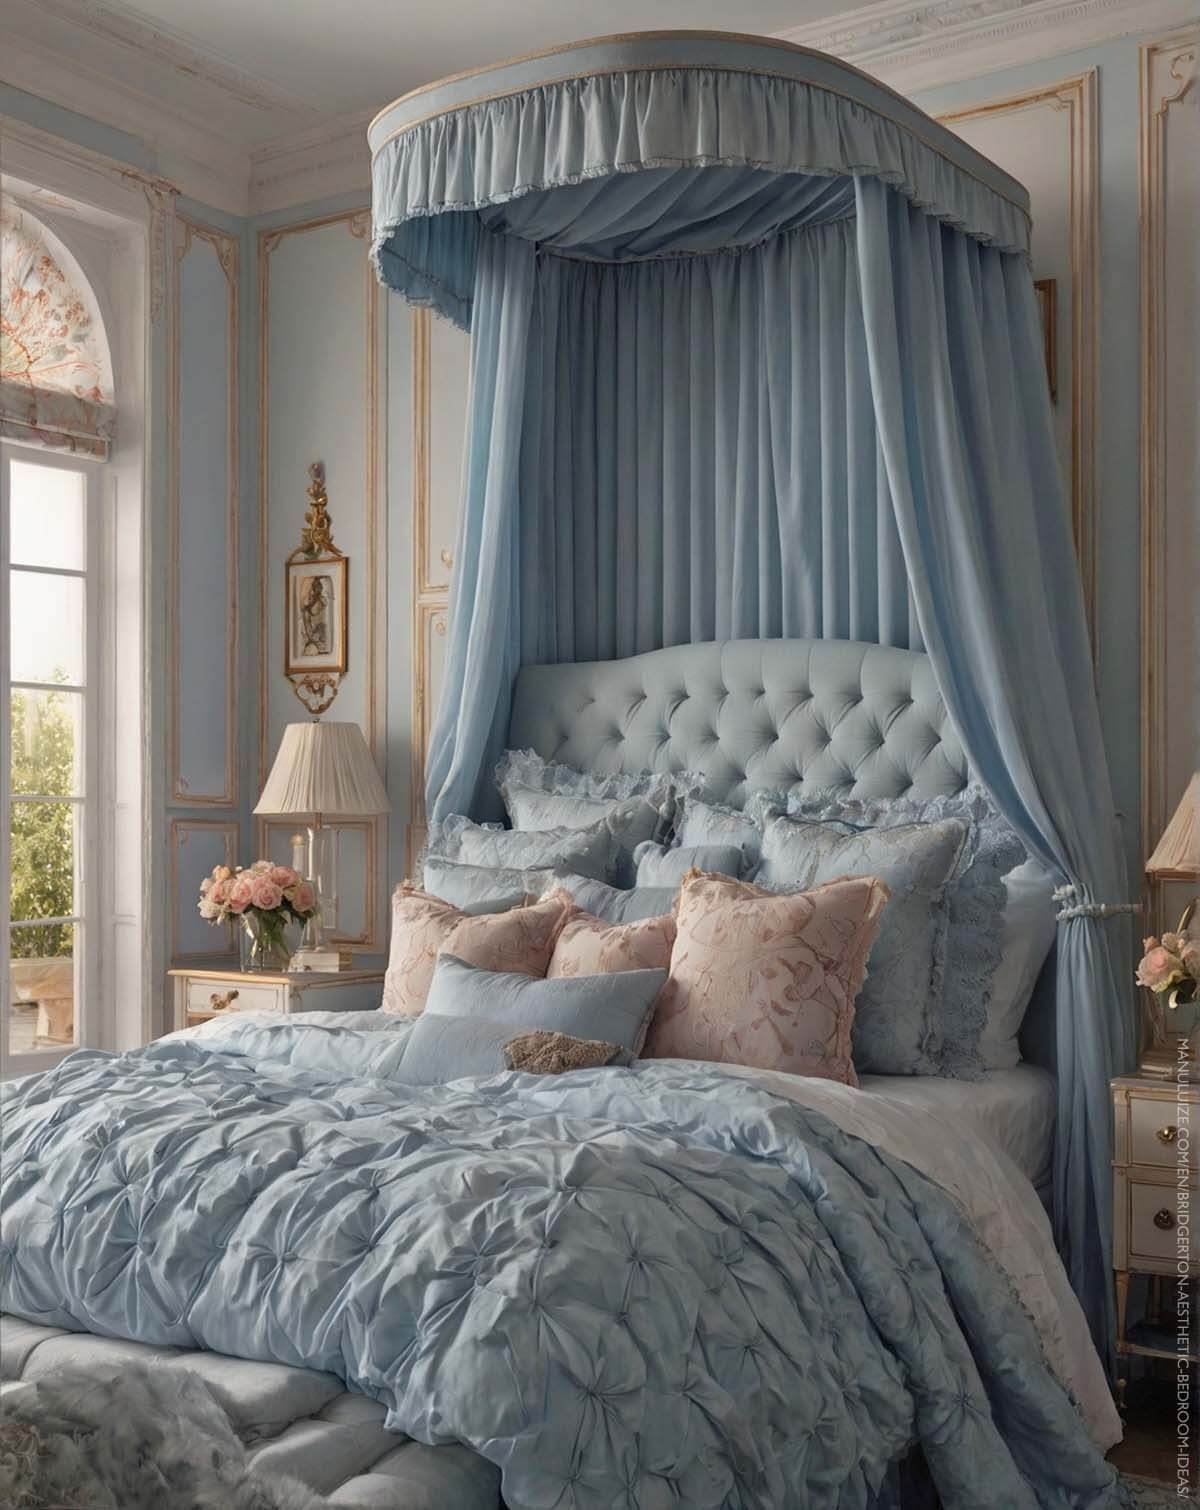 Bridgerton pastel blue canopy bed decor